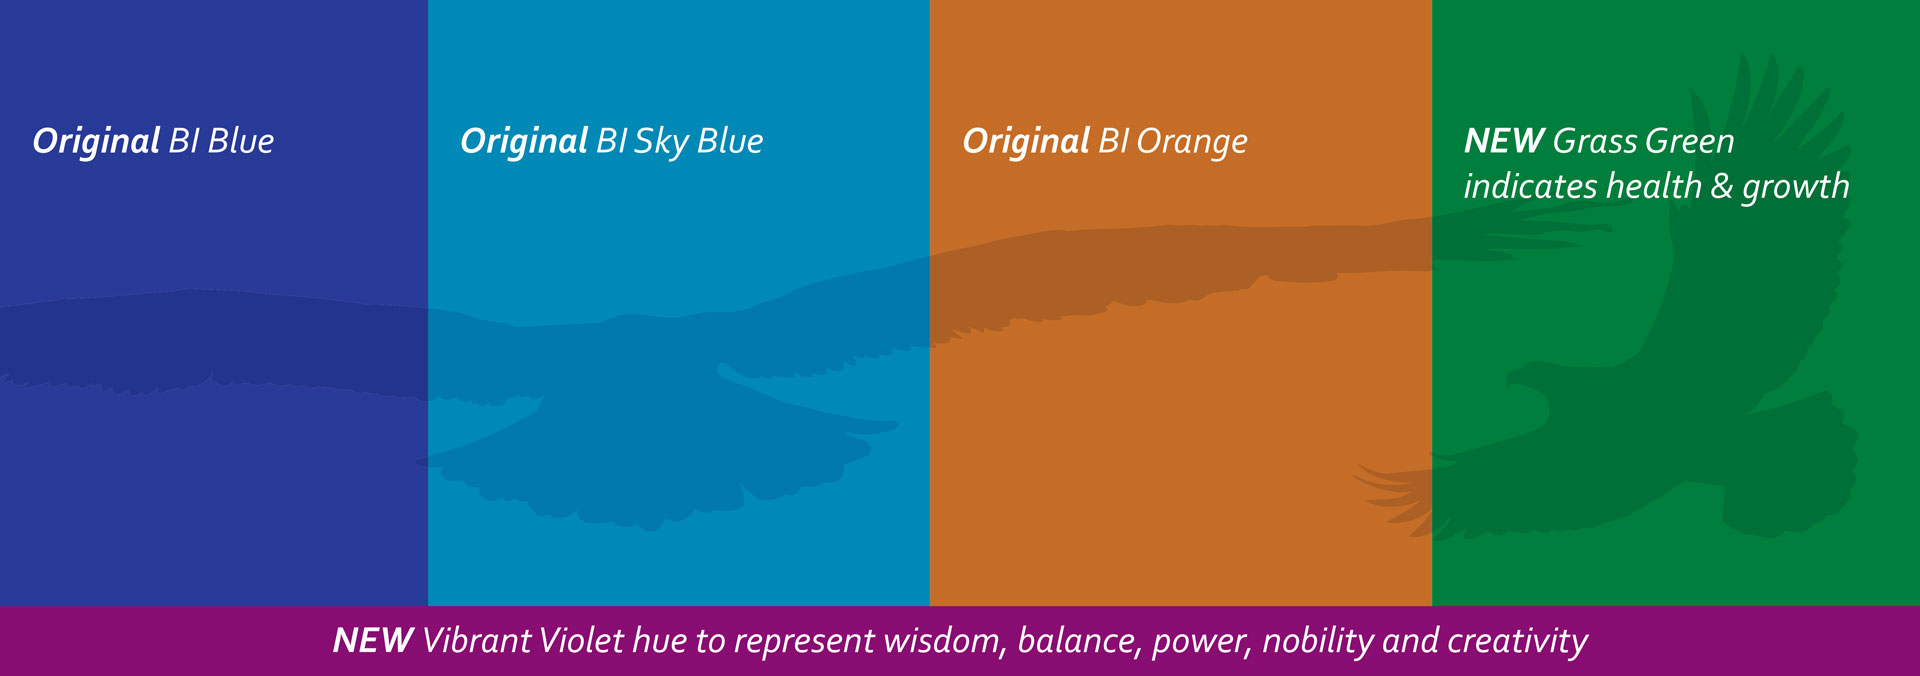 BI brand guide colors